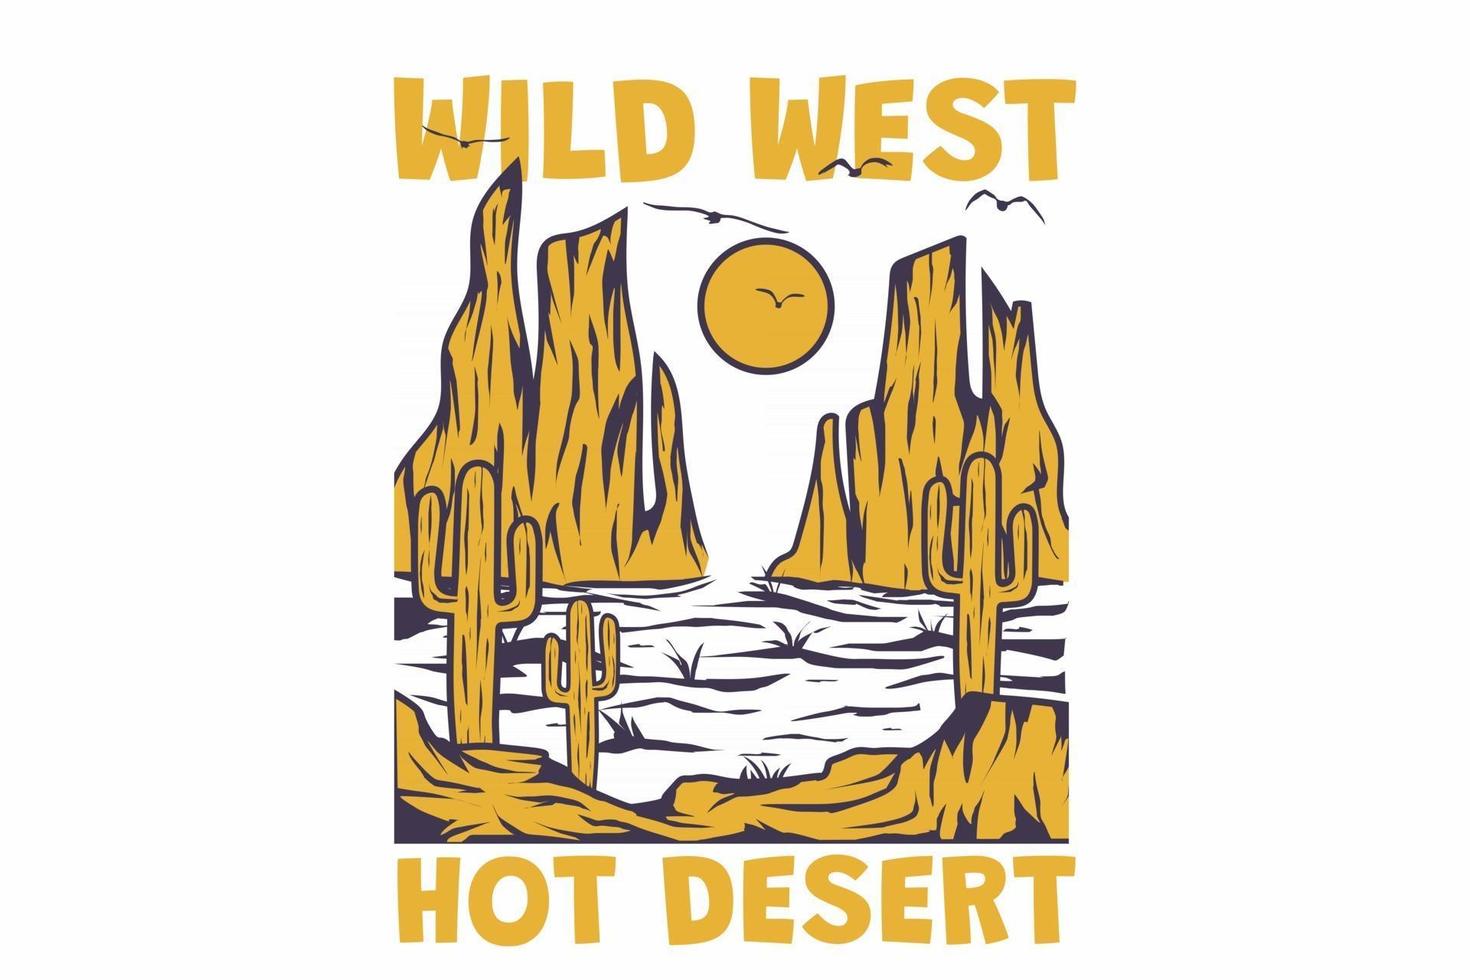 T-shirt retro wild west hot desert vintage style hand drawn vector